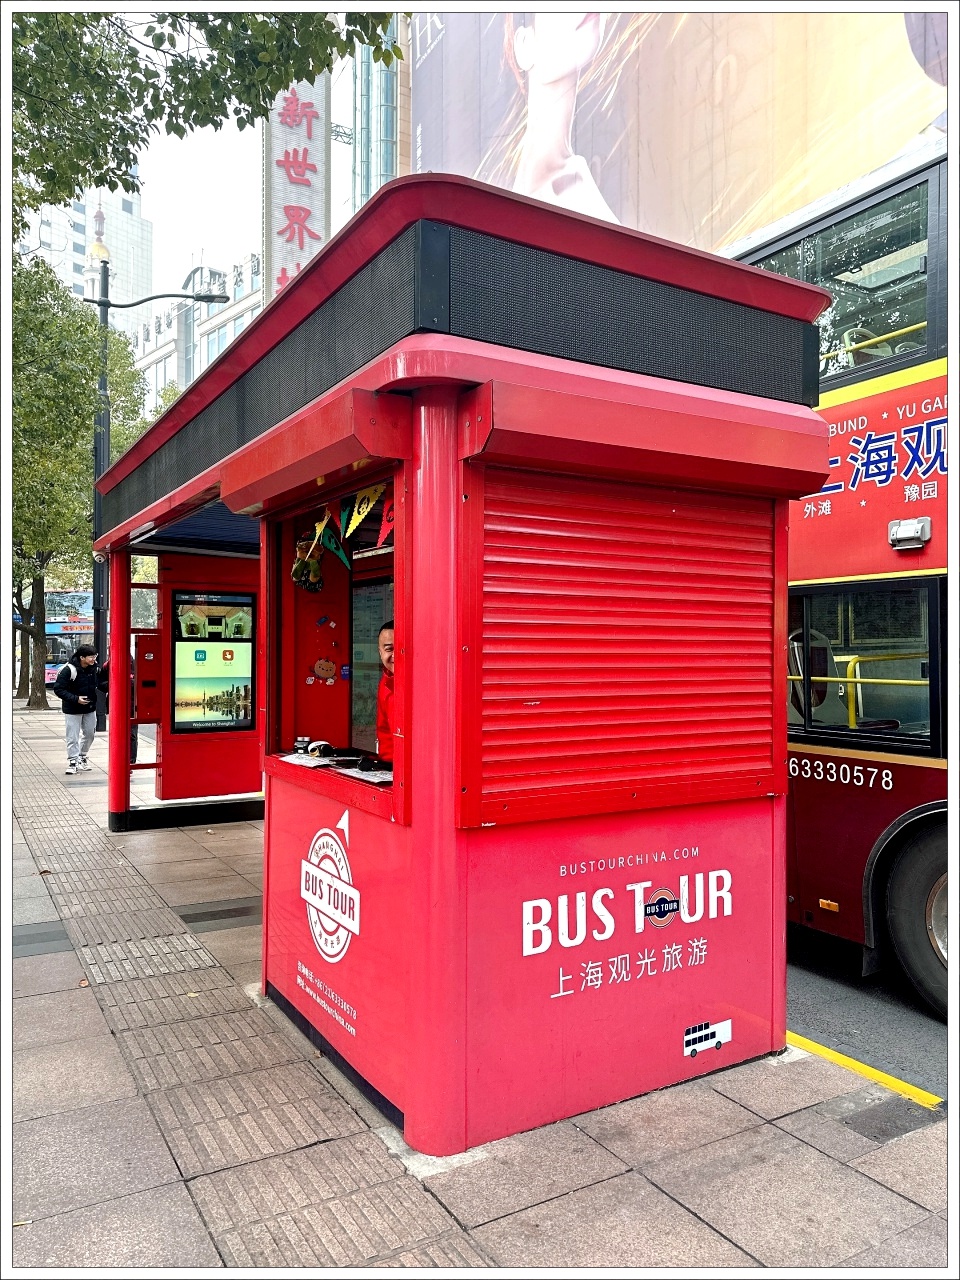 上海思南路交通,上海觀光巴士 路線,上海觀光巴士一日券,上海觀光巴士景點,上海觀光巴士費用,上海雙層巴士 @壞波妞の旅行食踨